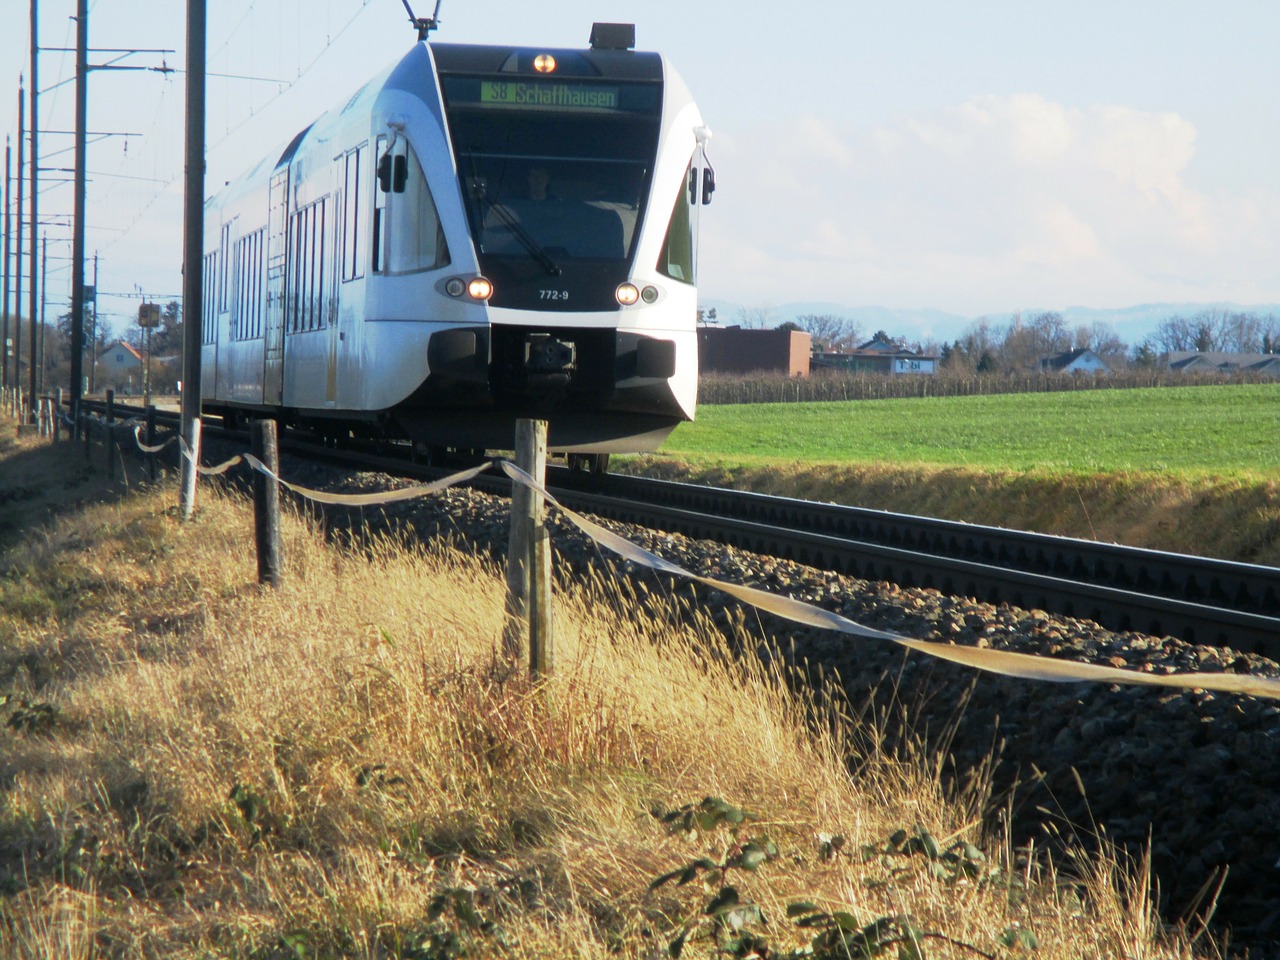 Geležinkelis, Traukinys, Regioninis Traukinys, Išeiti, Trasa, Lokomotyvas, Traukinio Vairuotojas, Transportas, Altnau, Thurgau